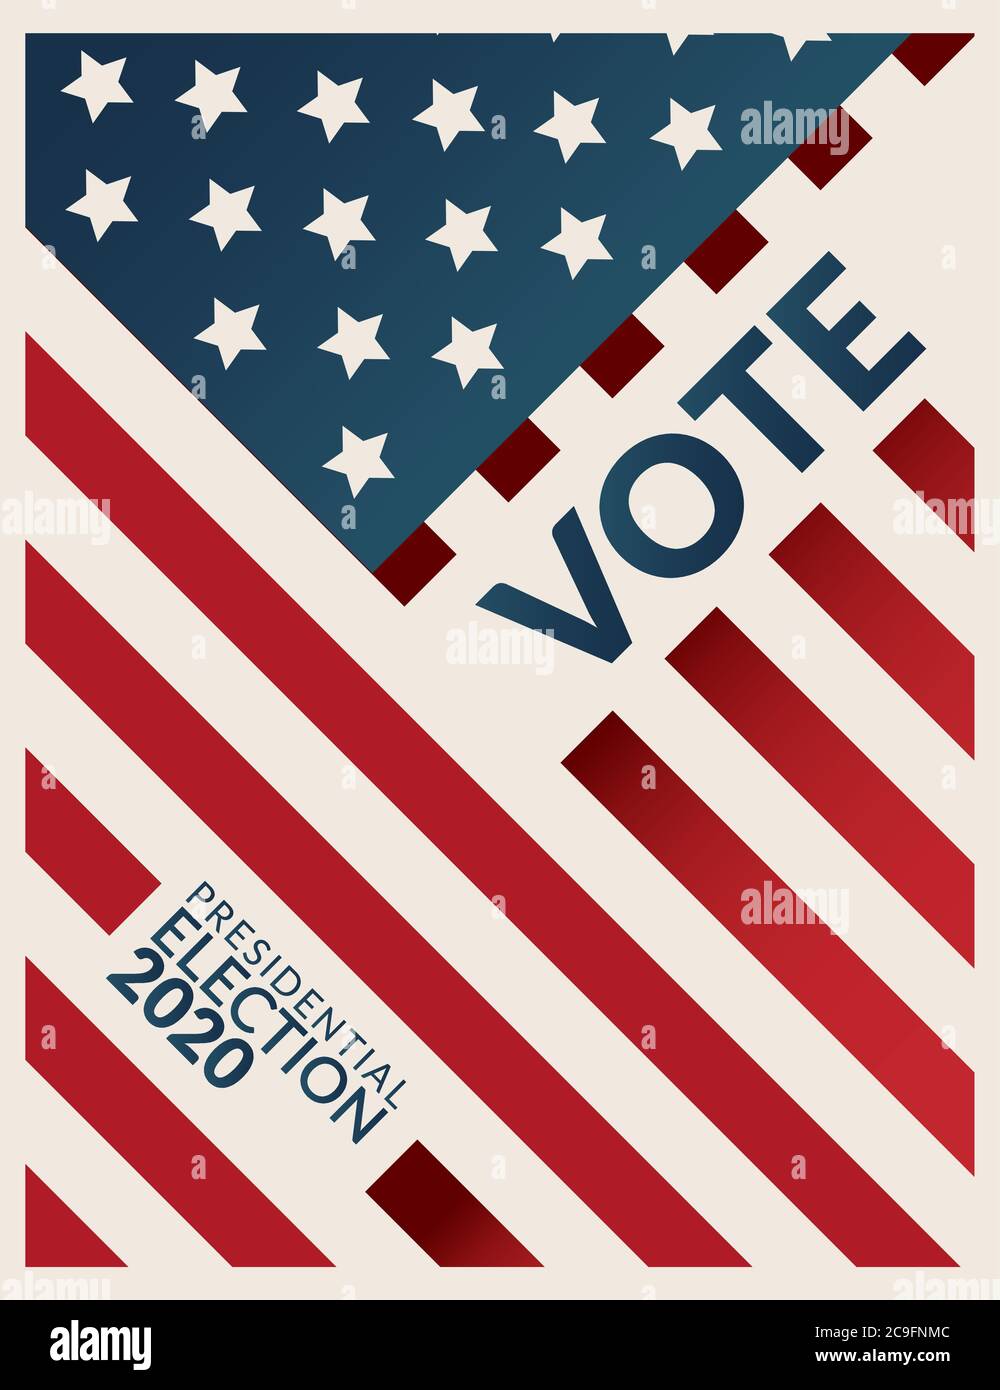 BANNIÈRE de l'affiche de campagne pour l'élection présidentielle AMÉRICAINE de 2020. Vote par mot élection présidentielle de 2020 avec motif drapeau américain en arrière-plan. Illustration de Vecteur